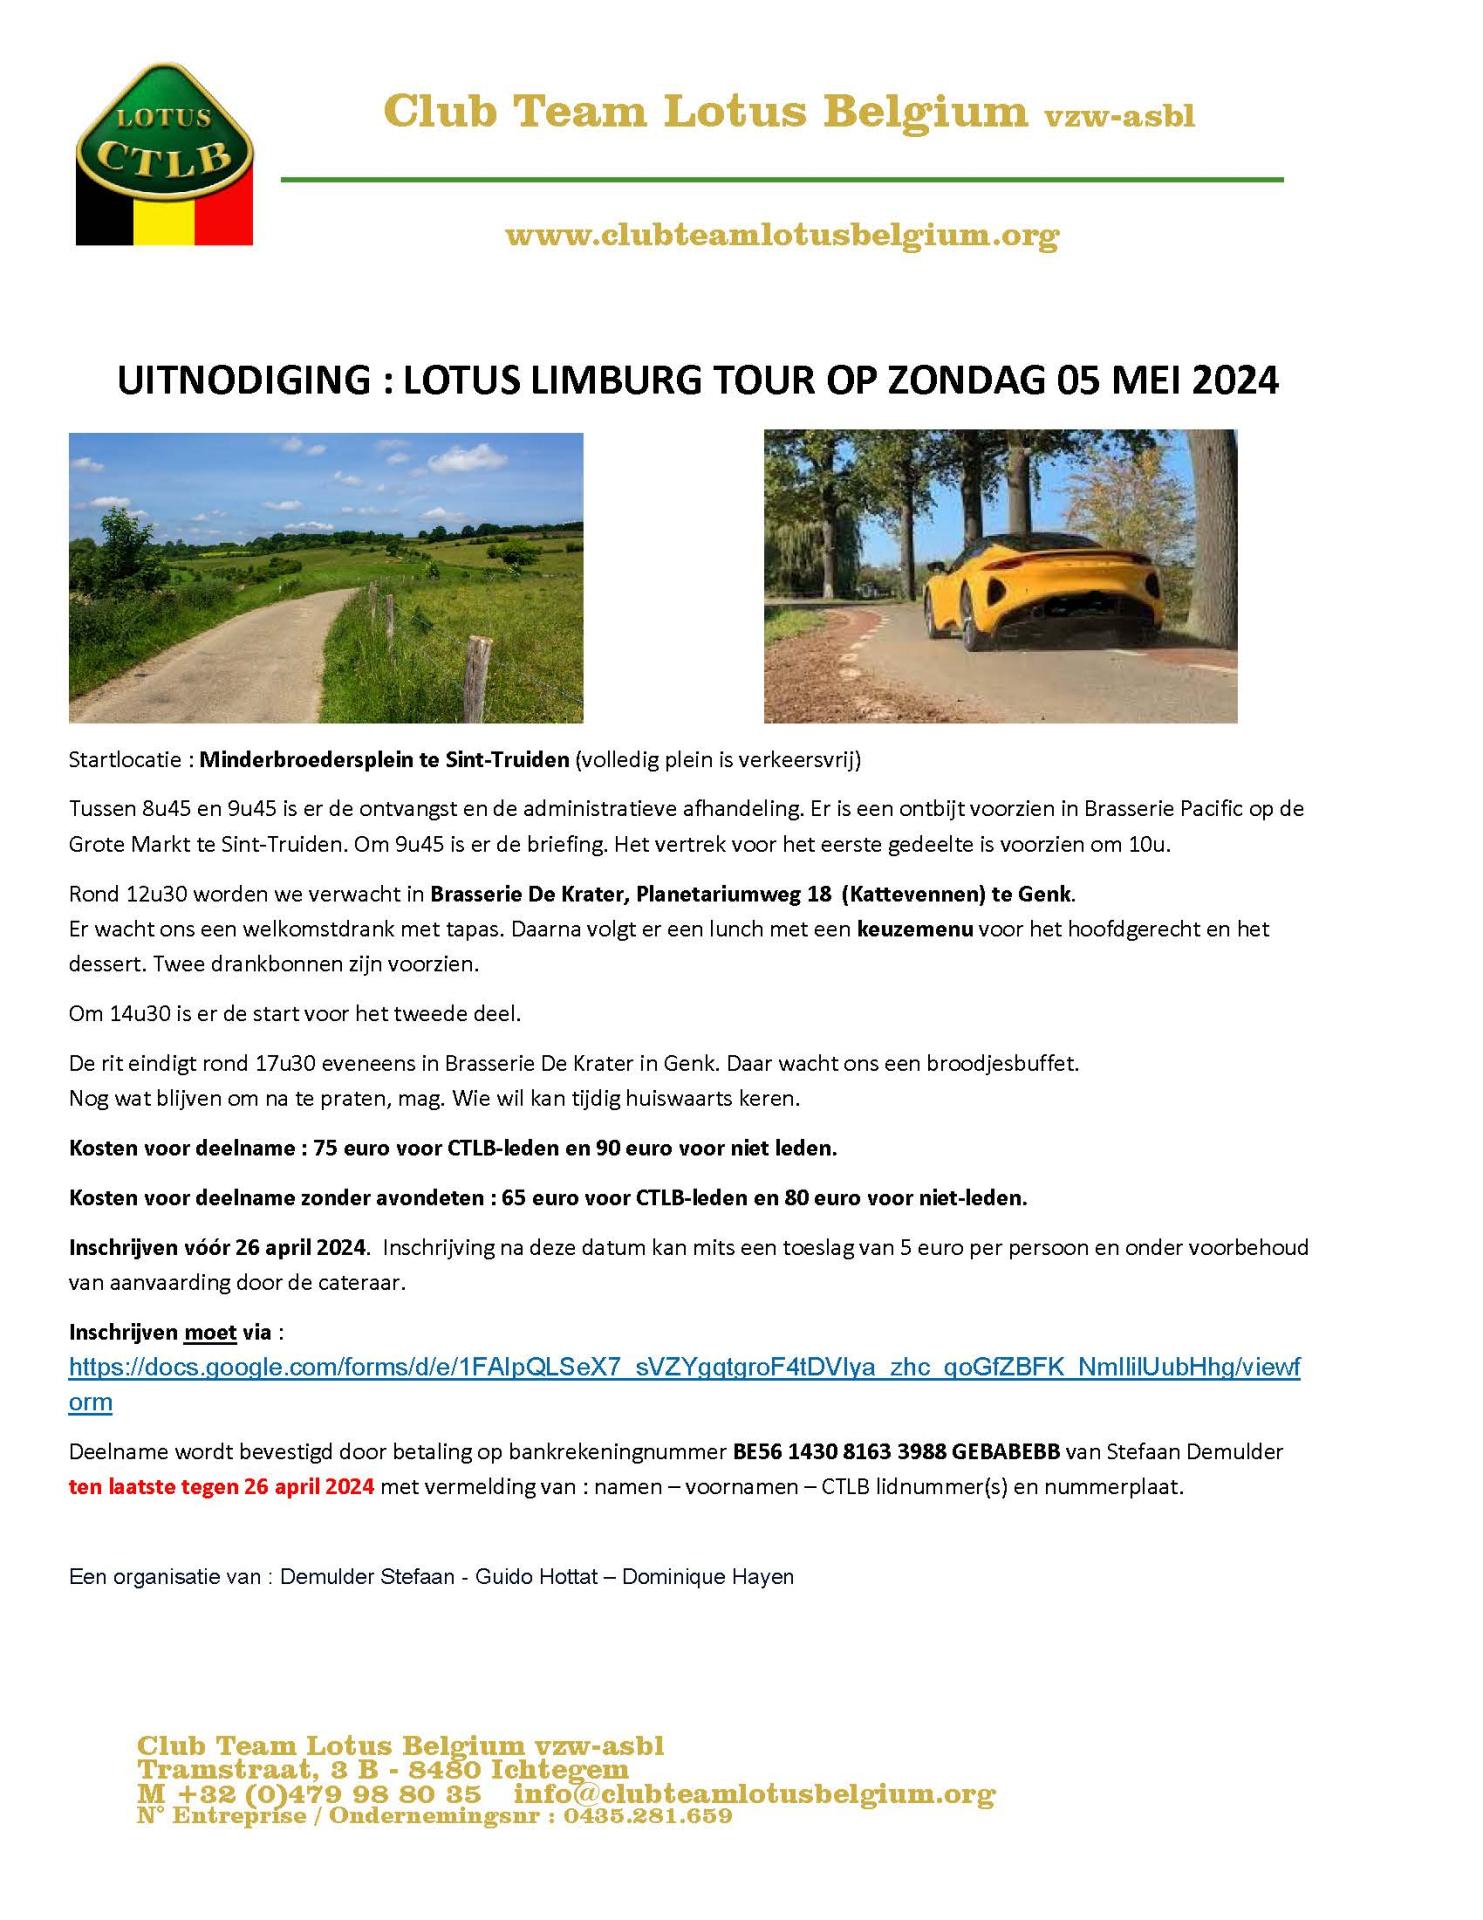 Uitnodiging lotus limburg tour 2024